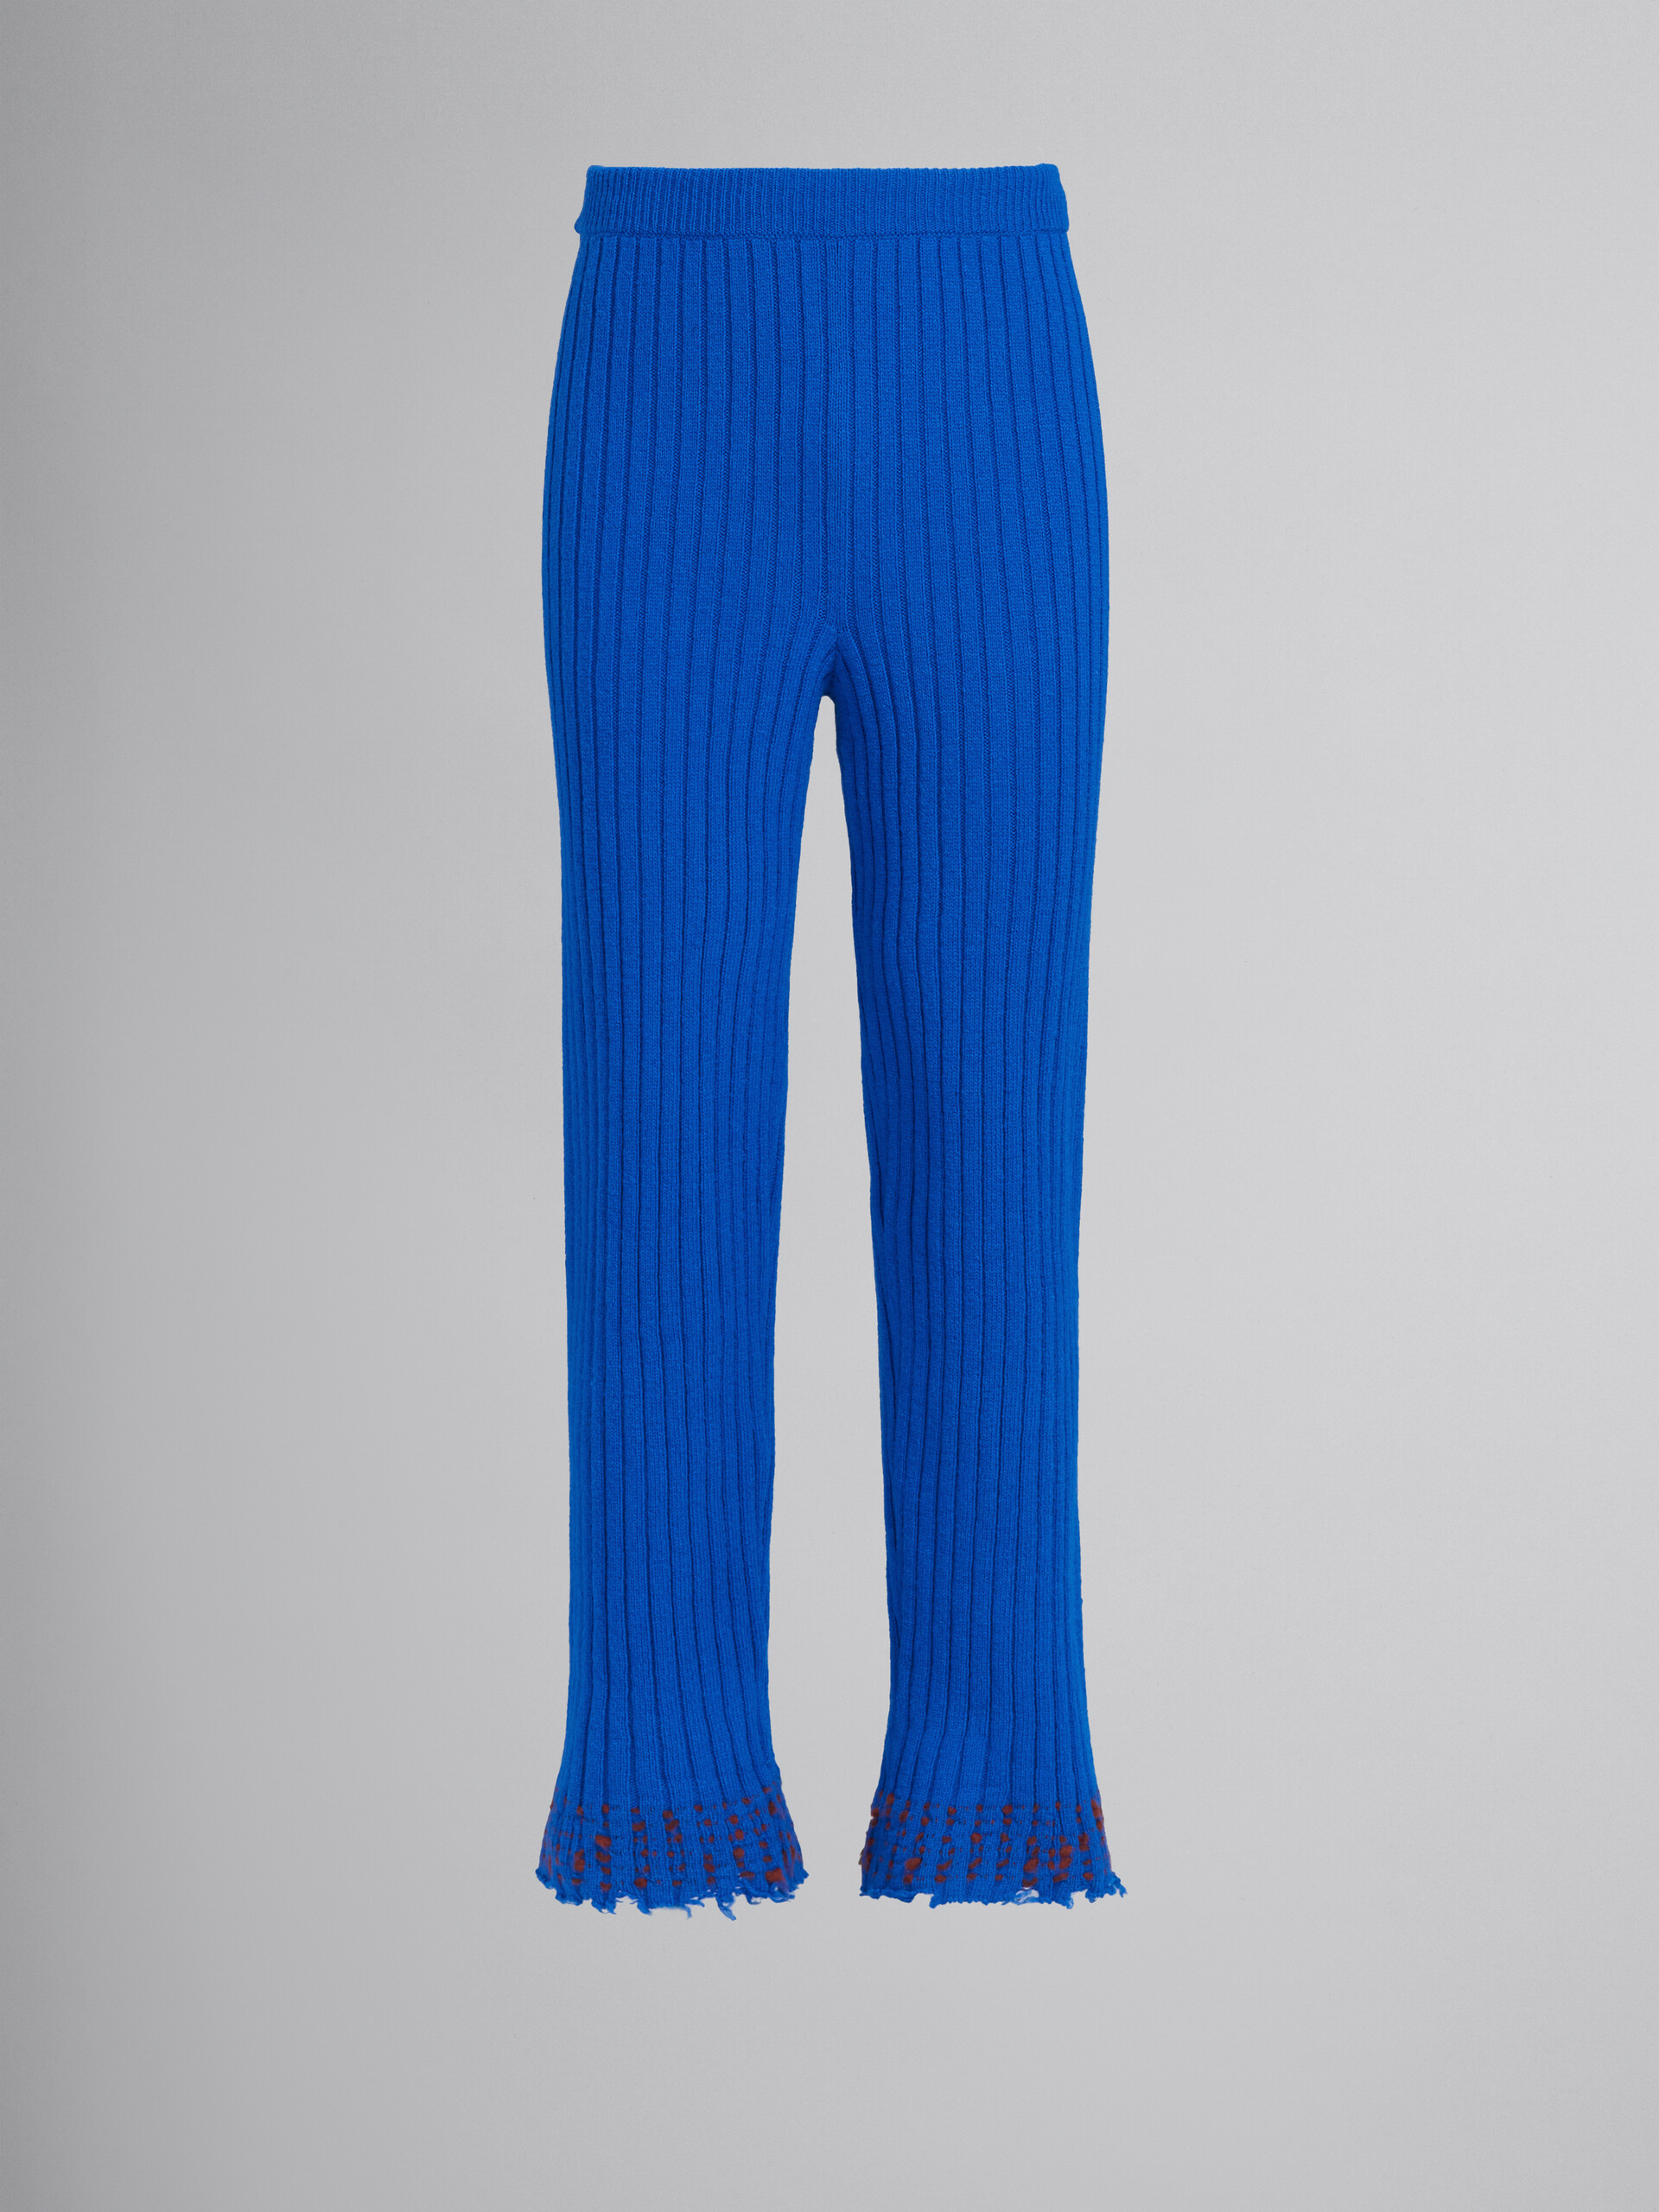 Blue wool knit sweater - Pants - Image 1